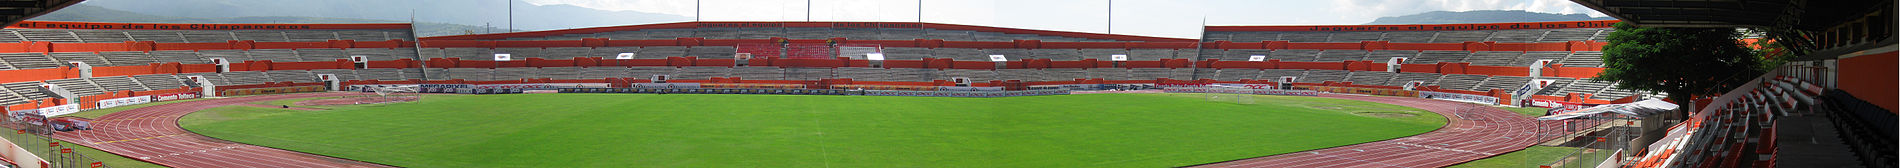 El Estadio Zoque VMR tiene capacidad para 22,000 Personas para Partidos de Futboll y 35,000 para Conciertos o Eventos 